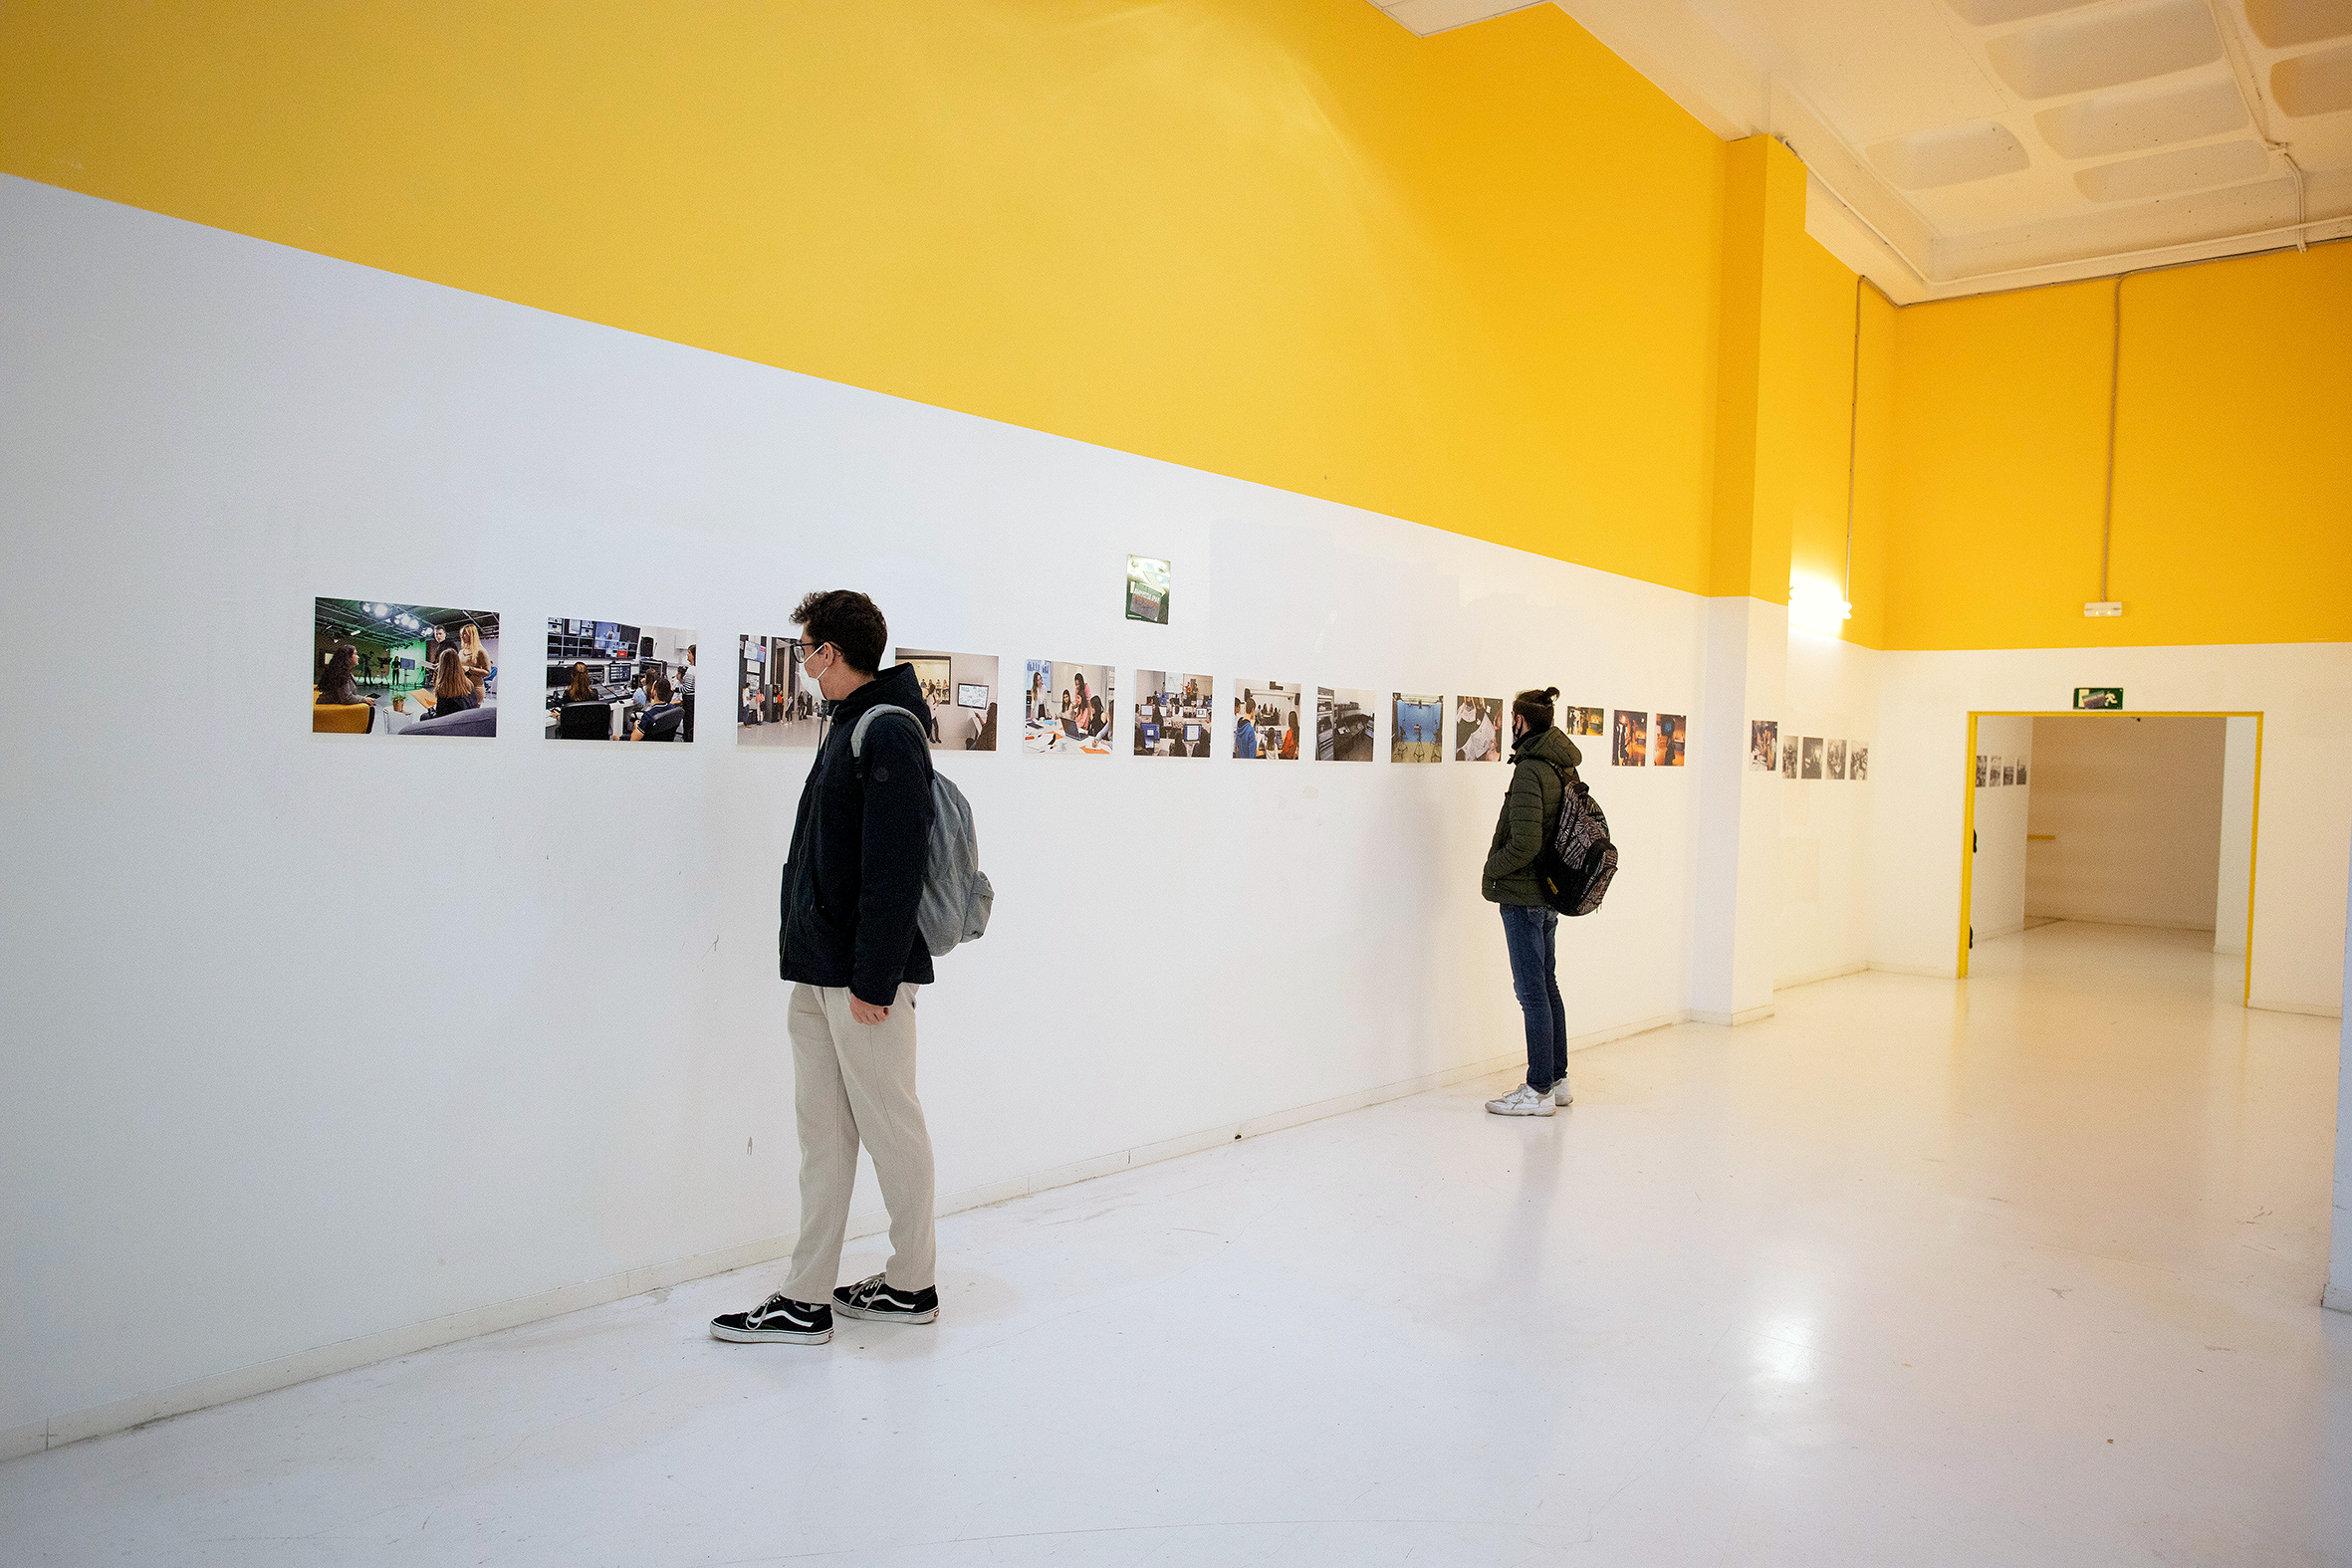 Exposición de fotografía. Dos personas observan las imágenes que cuelgan de las paredes